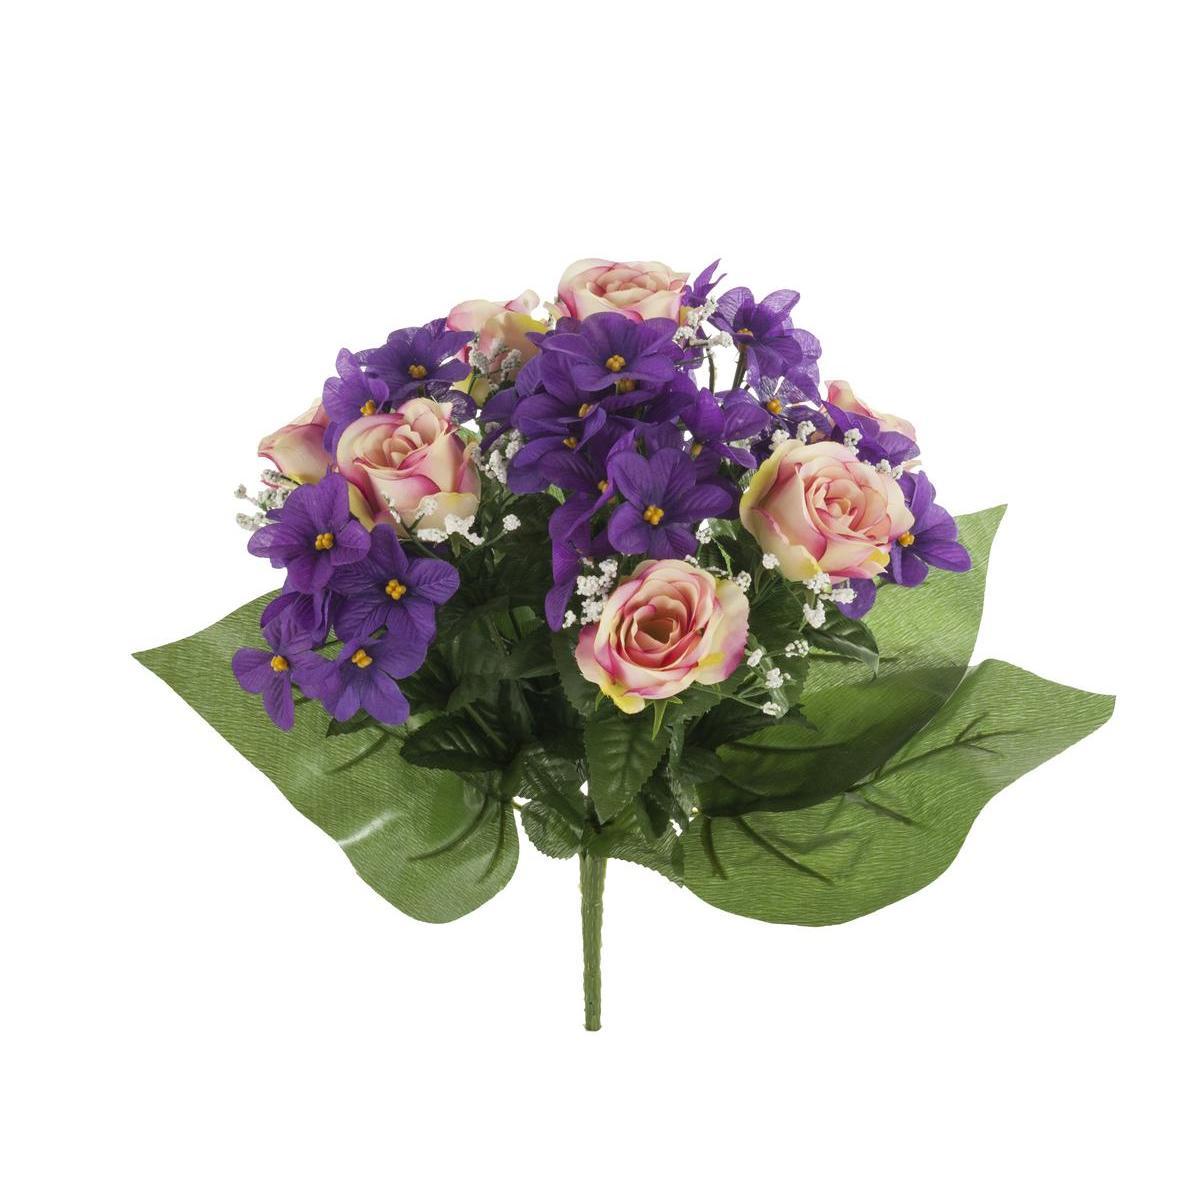 Bouquet de 14 roses et violettes - Tissus - H 36 cm - Différents coloris